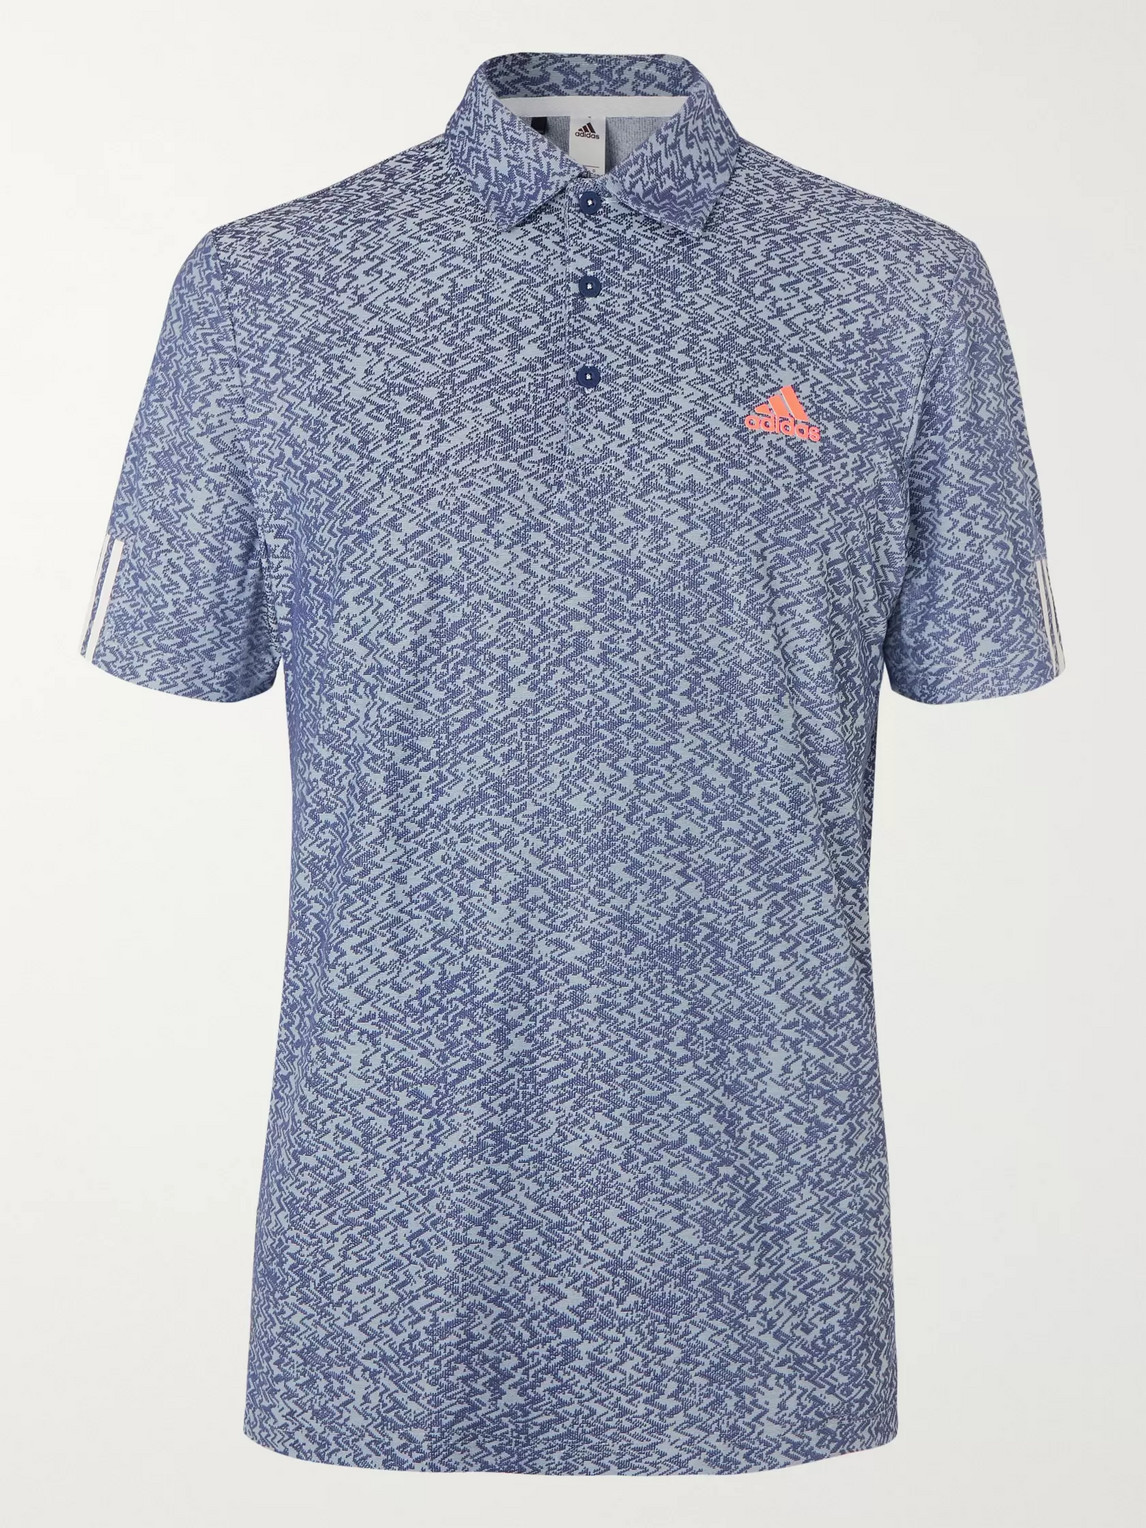 Adidas Golf Tech-jersey Golf Polo Shirt In Blue